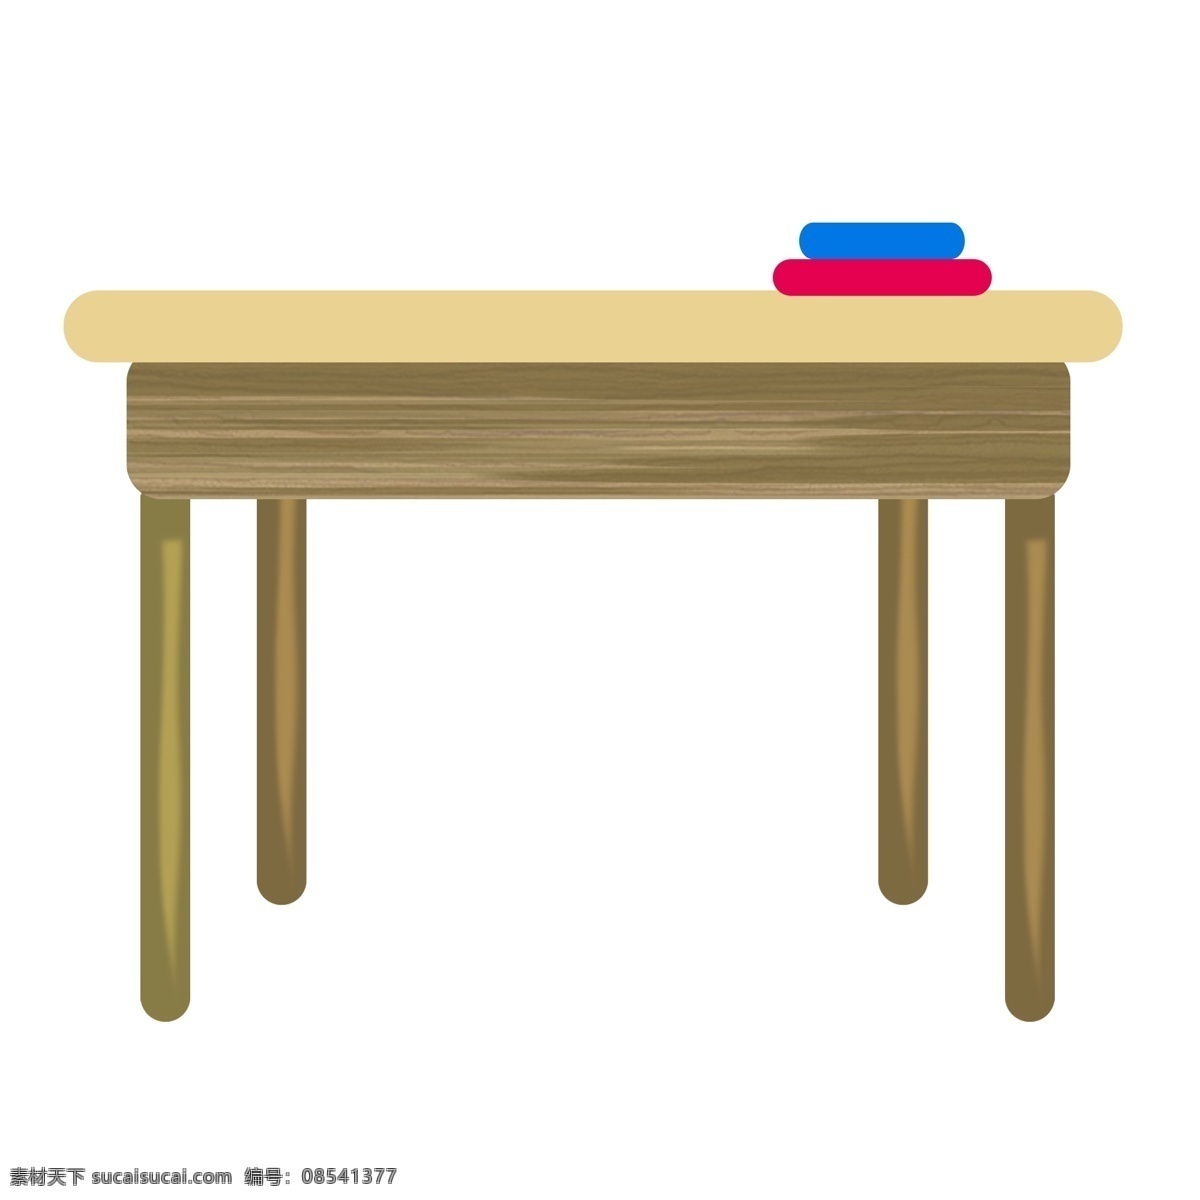 黄色 桌面 木质 纹理 插图 正方形桌子 创意卡通 卡通插画 家具 卡通 插画 木桌 桌子 餐桌 家具装饰 木质桌子